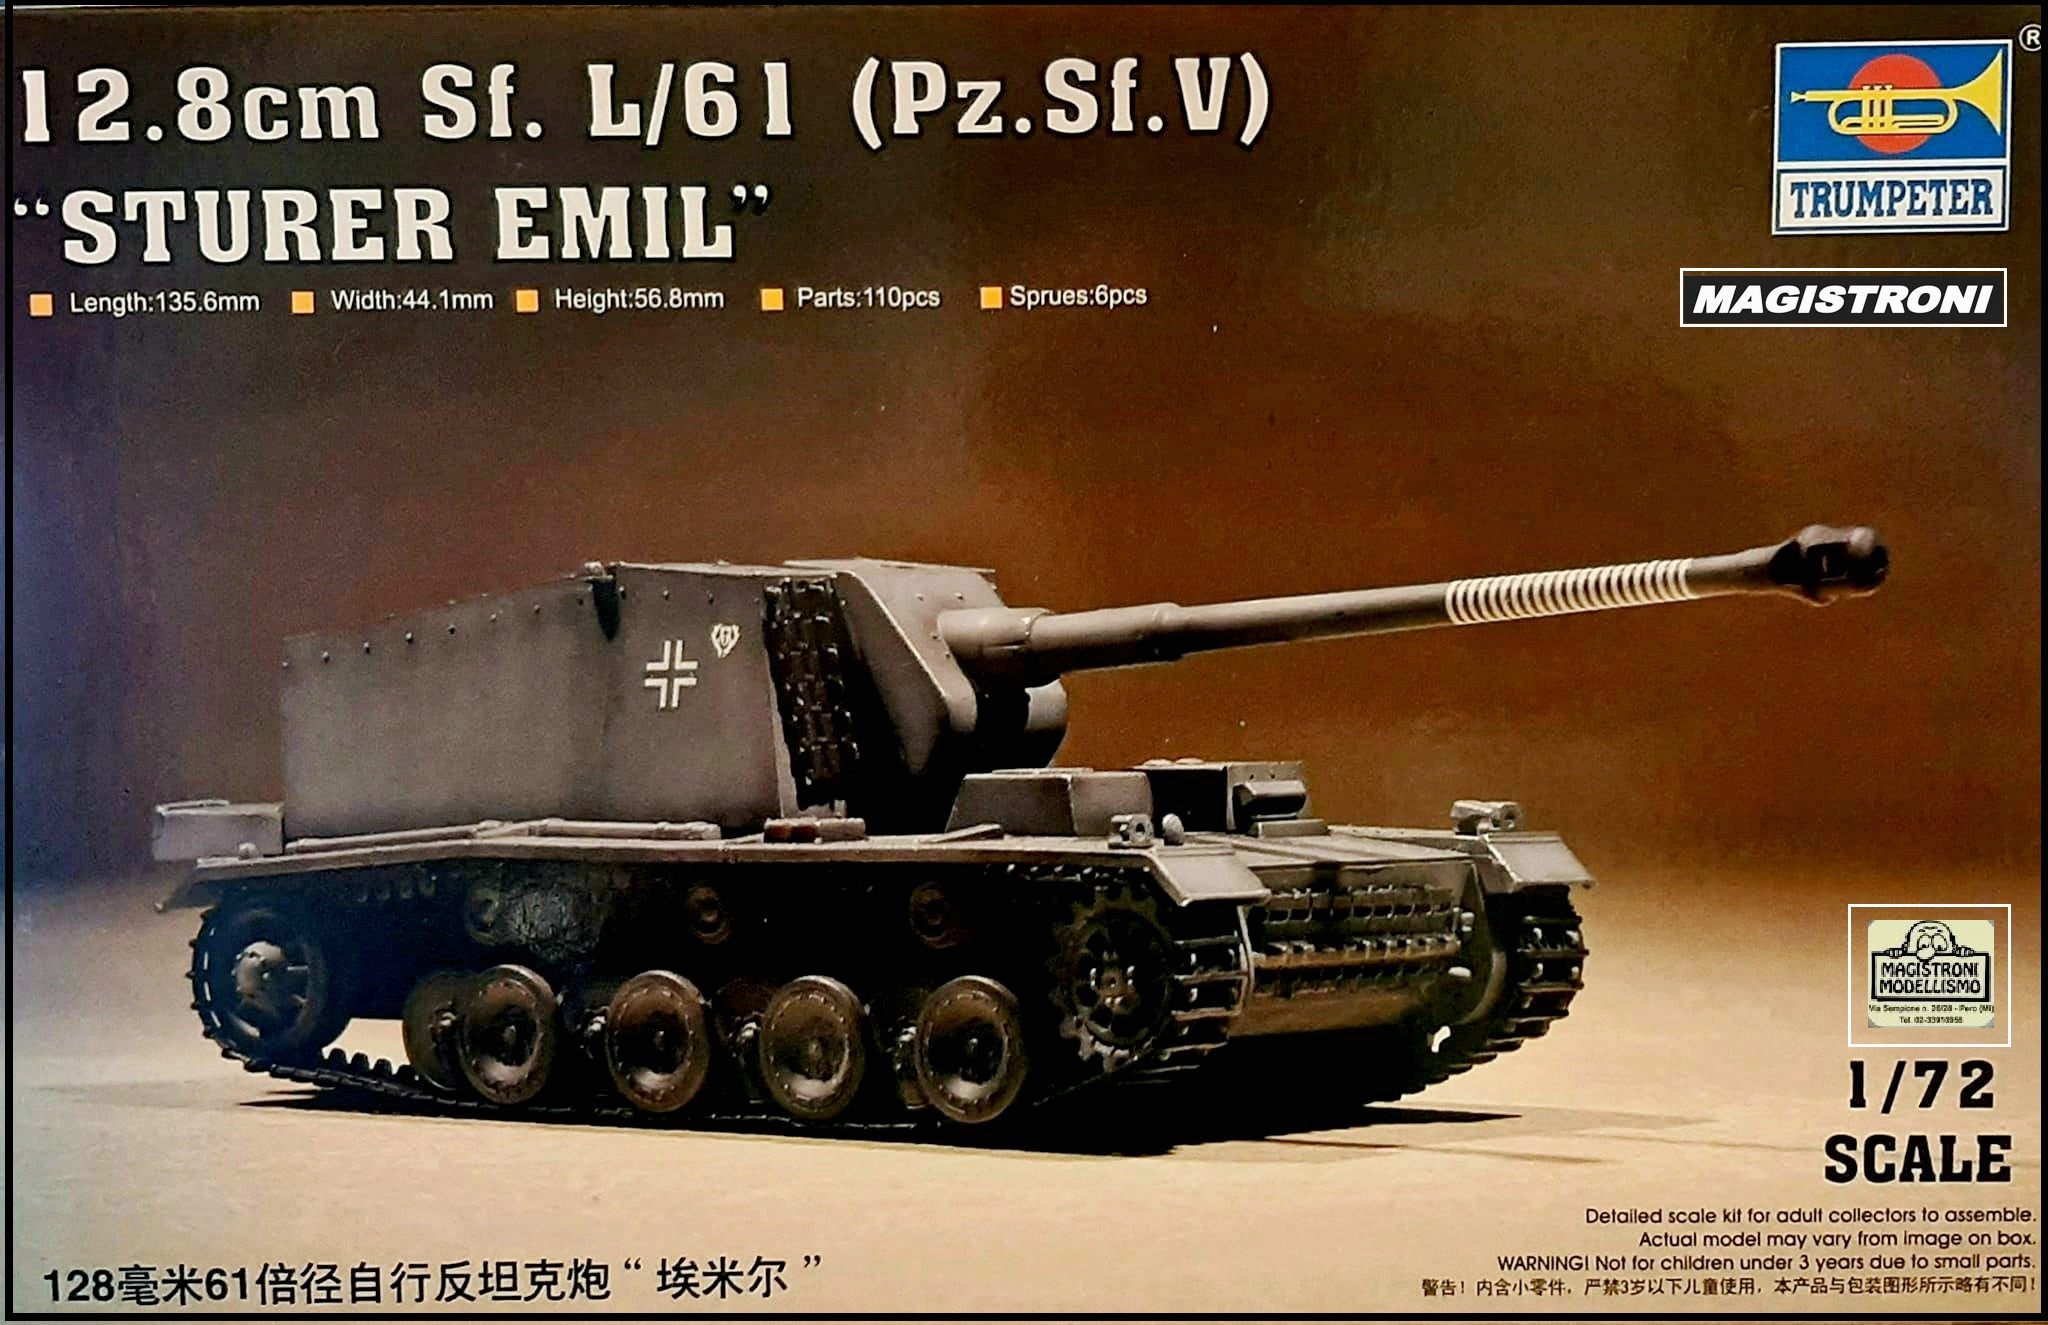 12.8cmSf.L/61(Pz.Sf.V)"STURER EMIL"